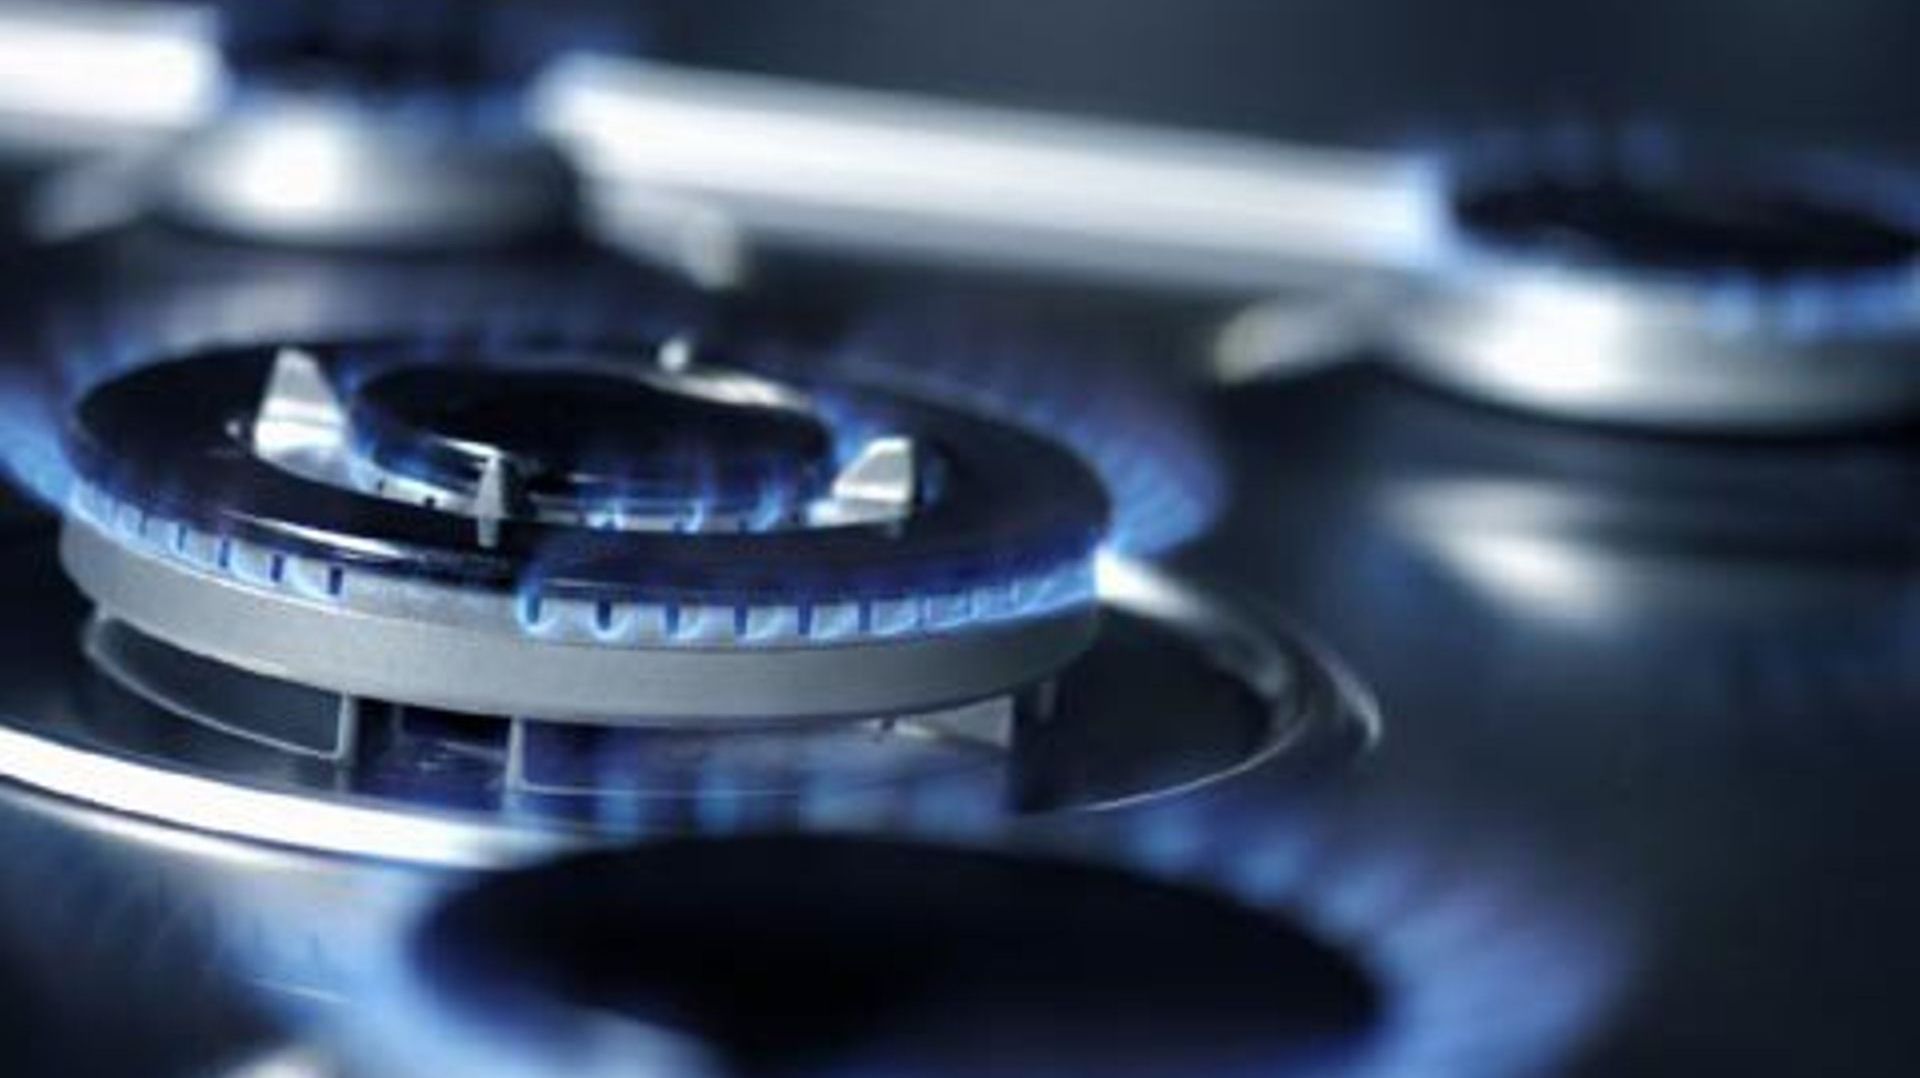 Le prix du gaz en Europe dépasse les 300 euros par mégawattheure ce lundi, alors qu'il était à moins de 20 euros il y a un an